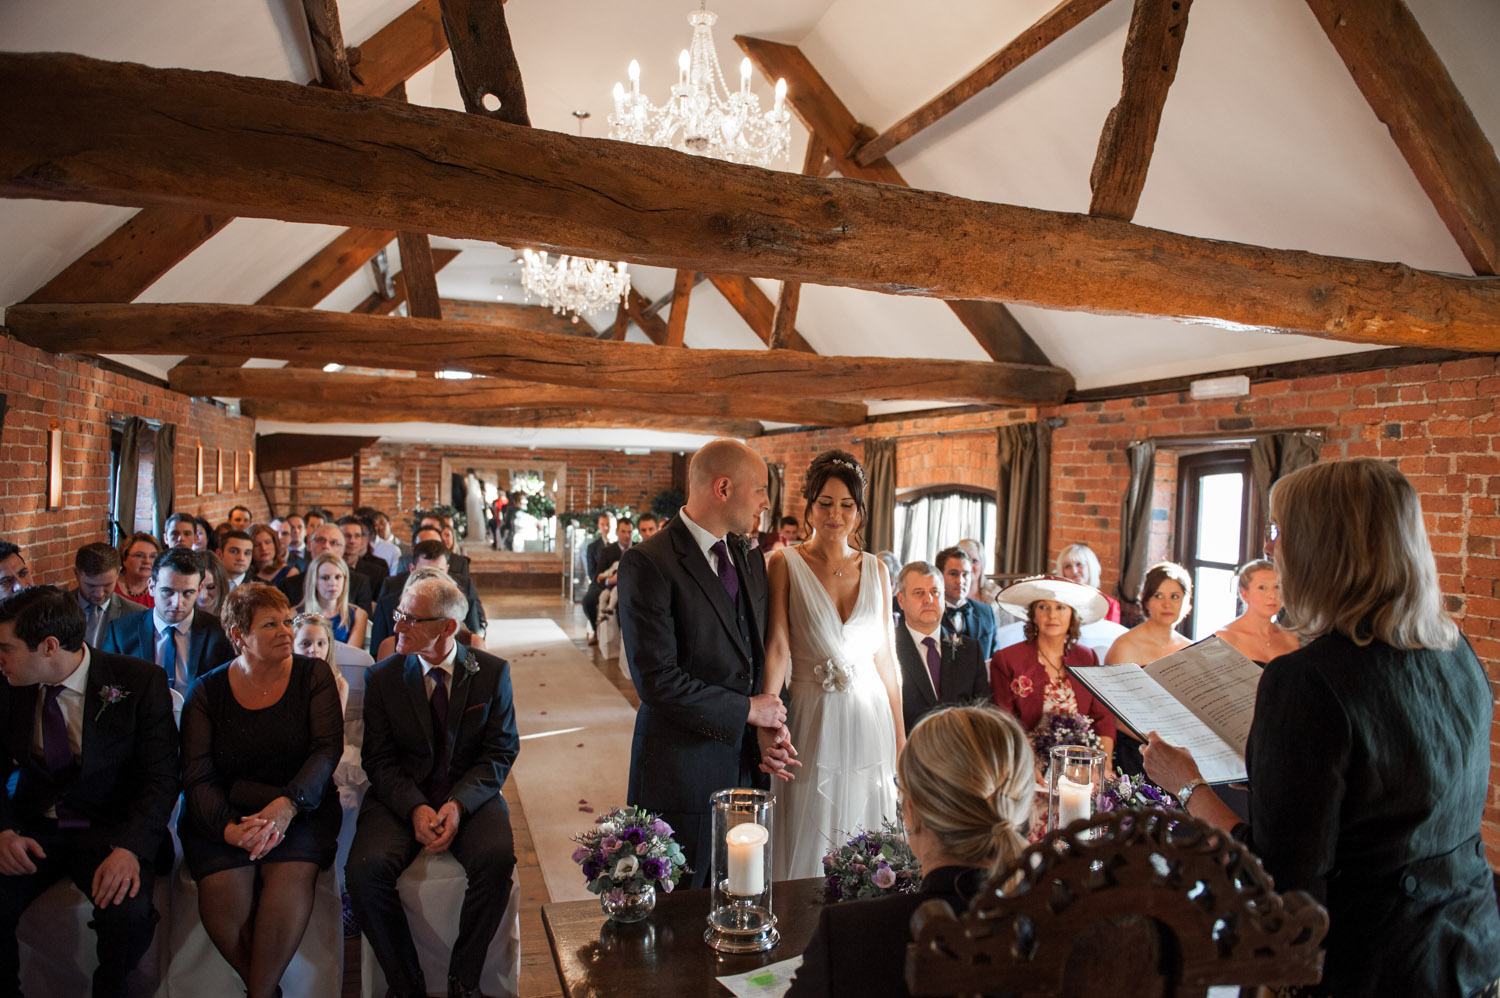 Wedding ceremony at Swancar Farm